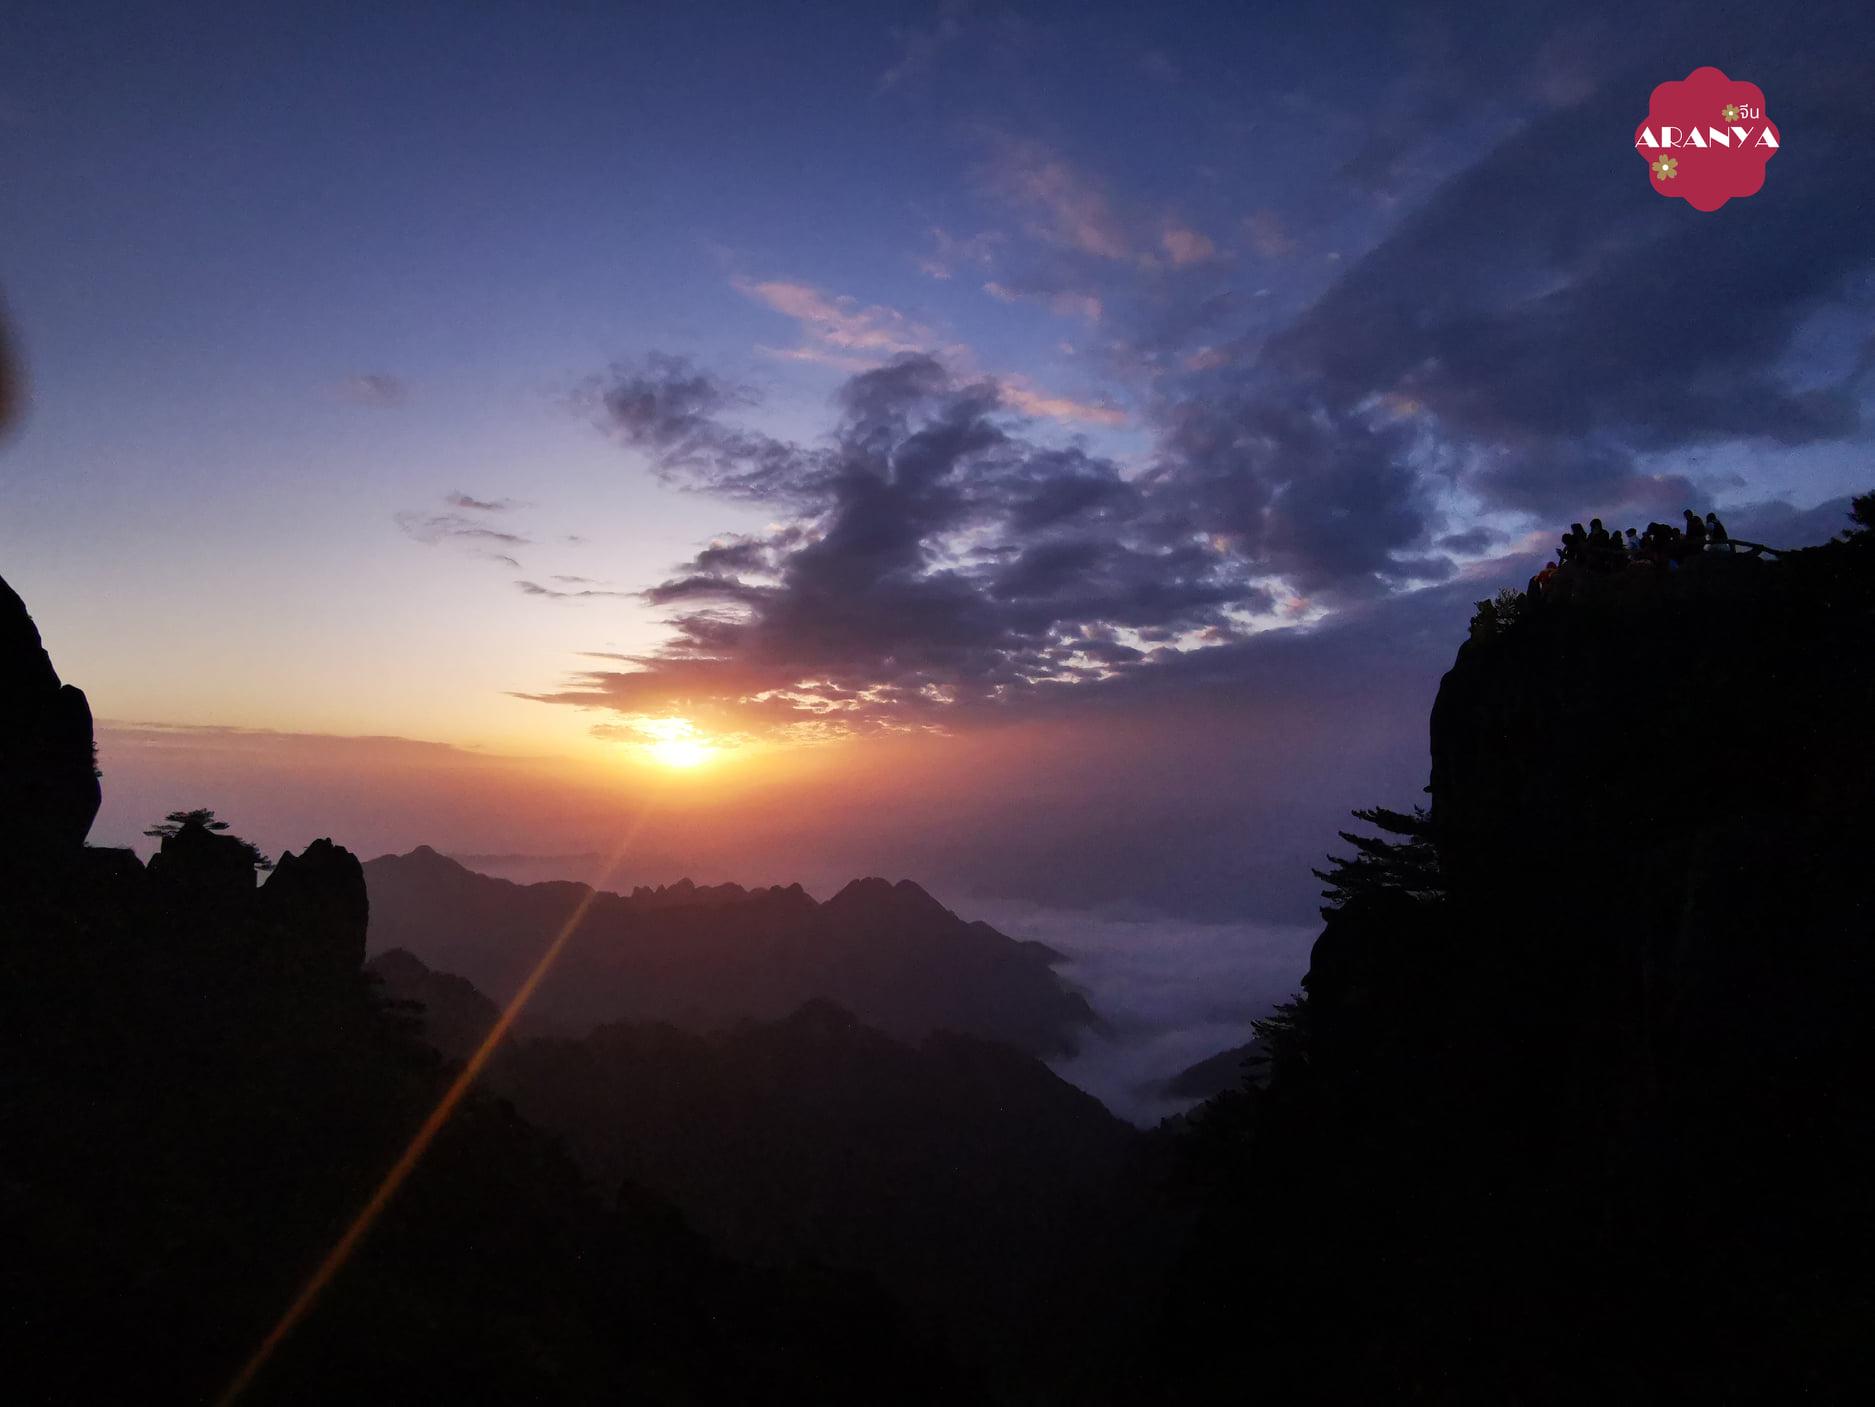 #หวงซาน黄山 #พระอาทิตย์ขึ้น
บางคนบอกว่า เมื่อมาเที่ยวภูเขาหวงซาน(黄山)แล้ว ถ้าไม่ได้…